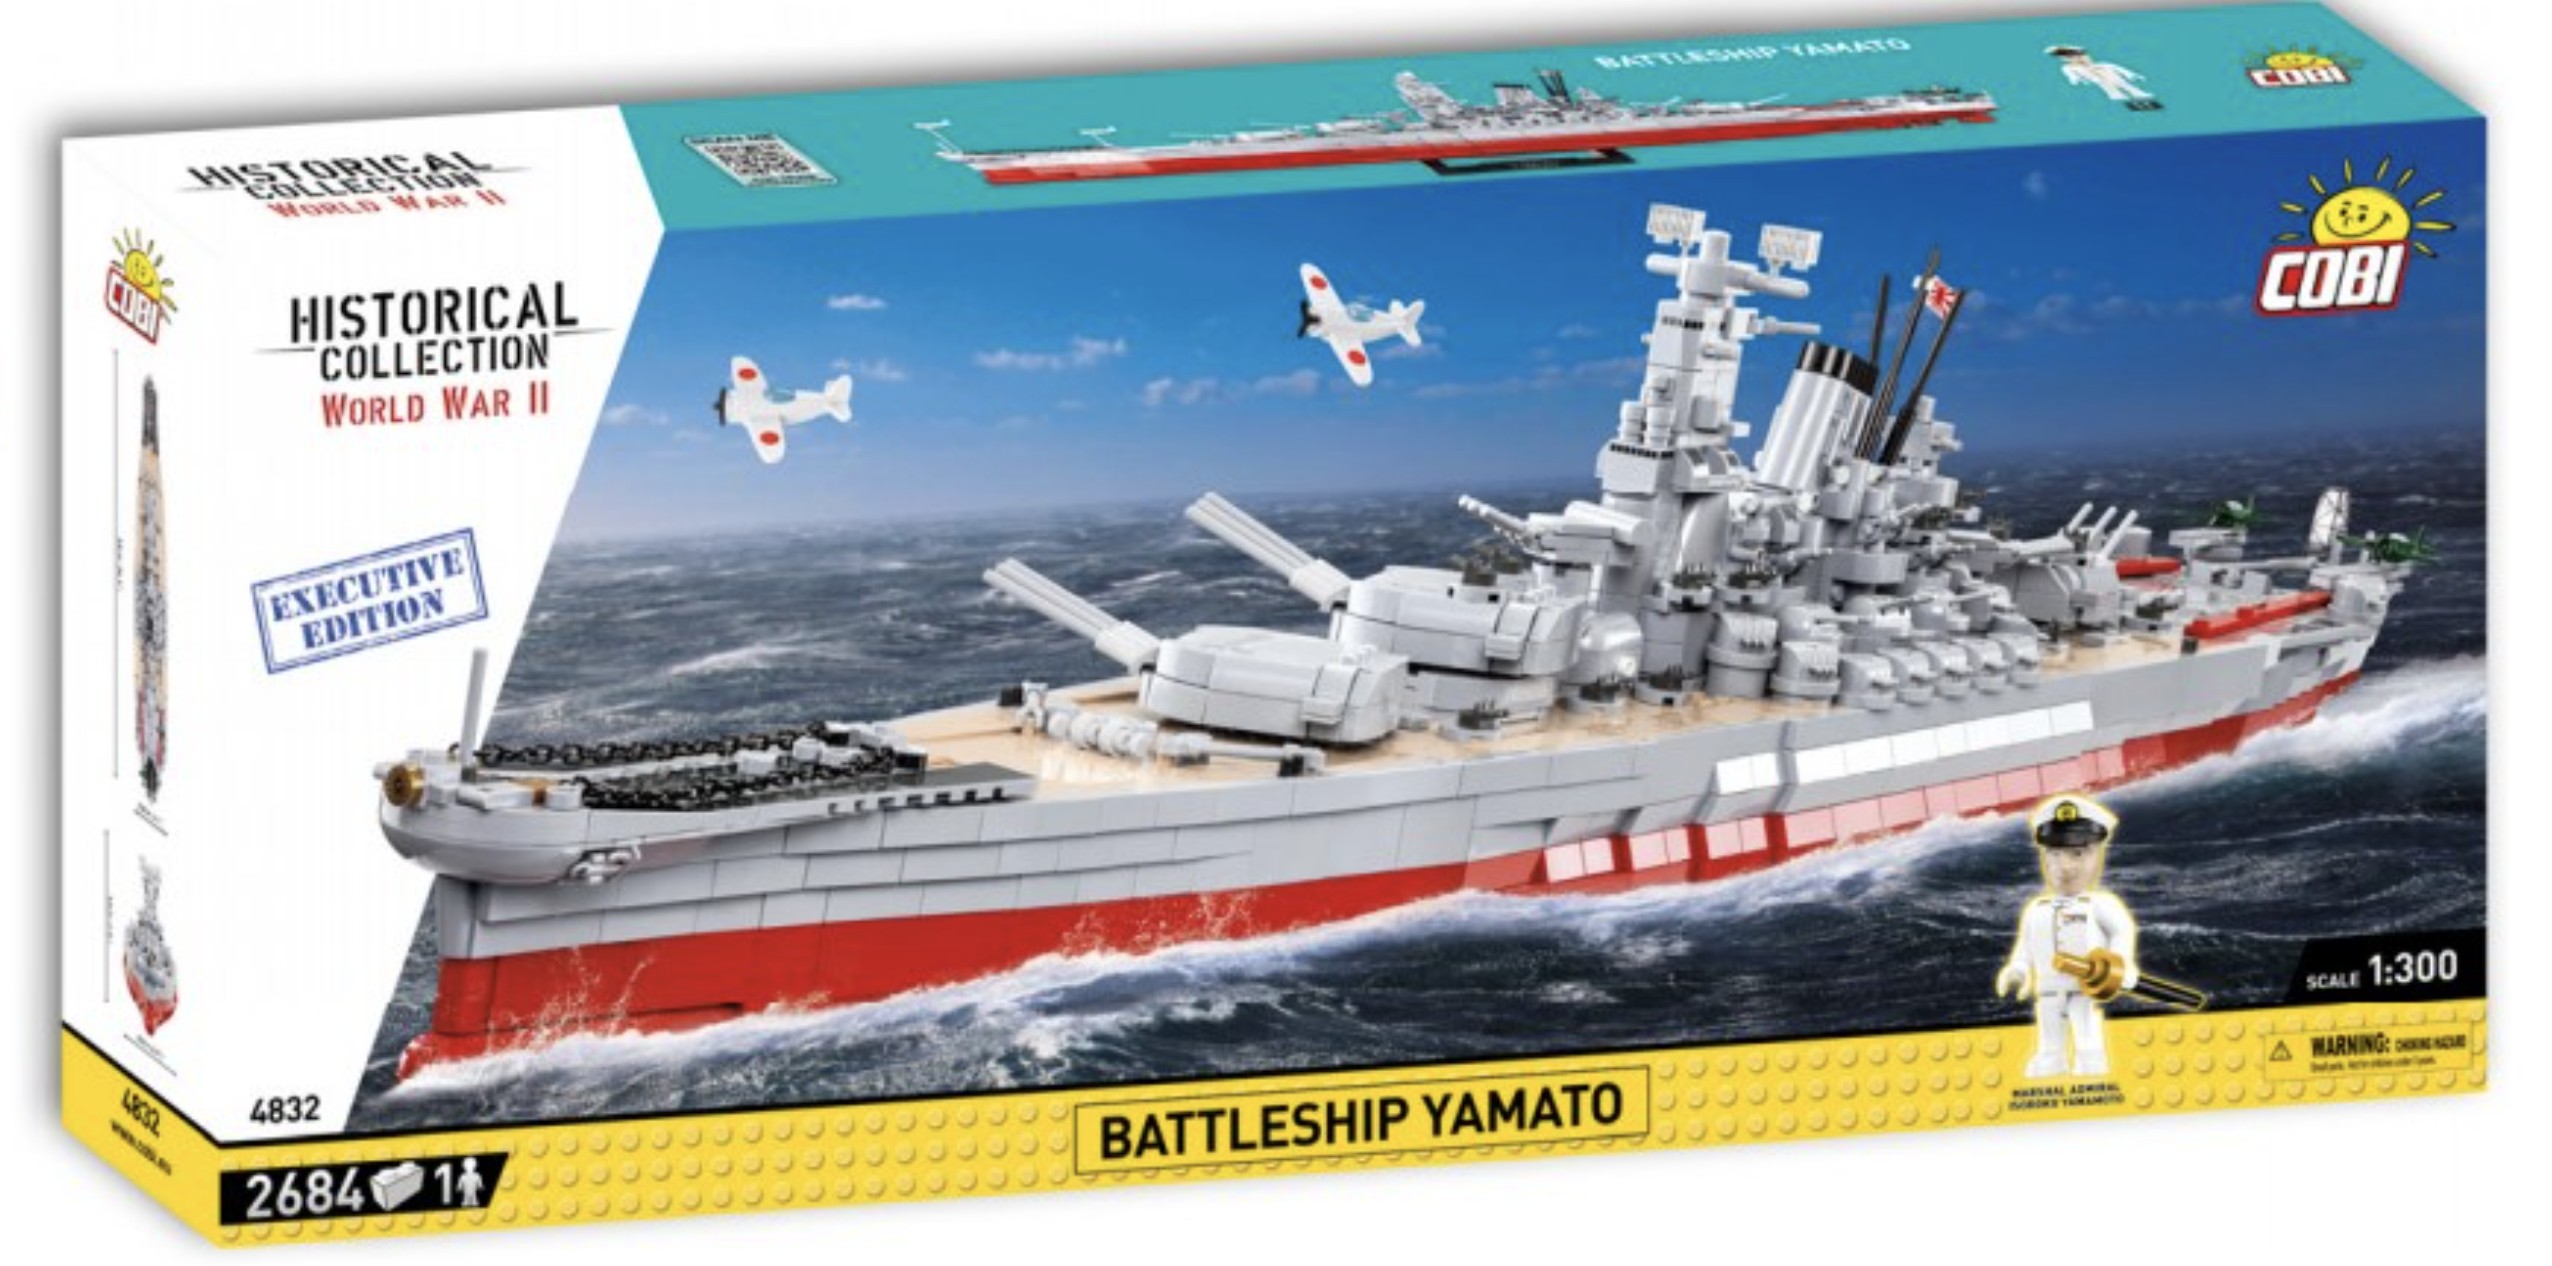 4832 - Battleship Yamato - Executive Edition